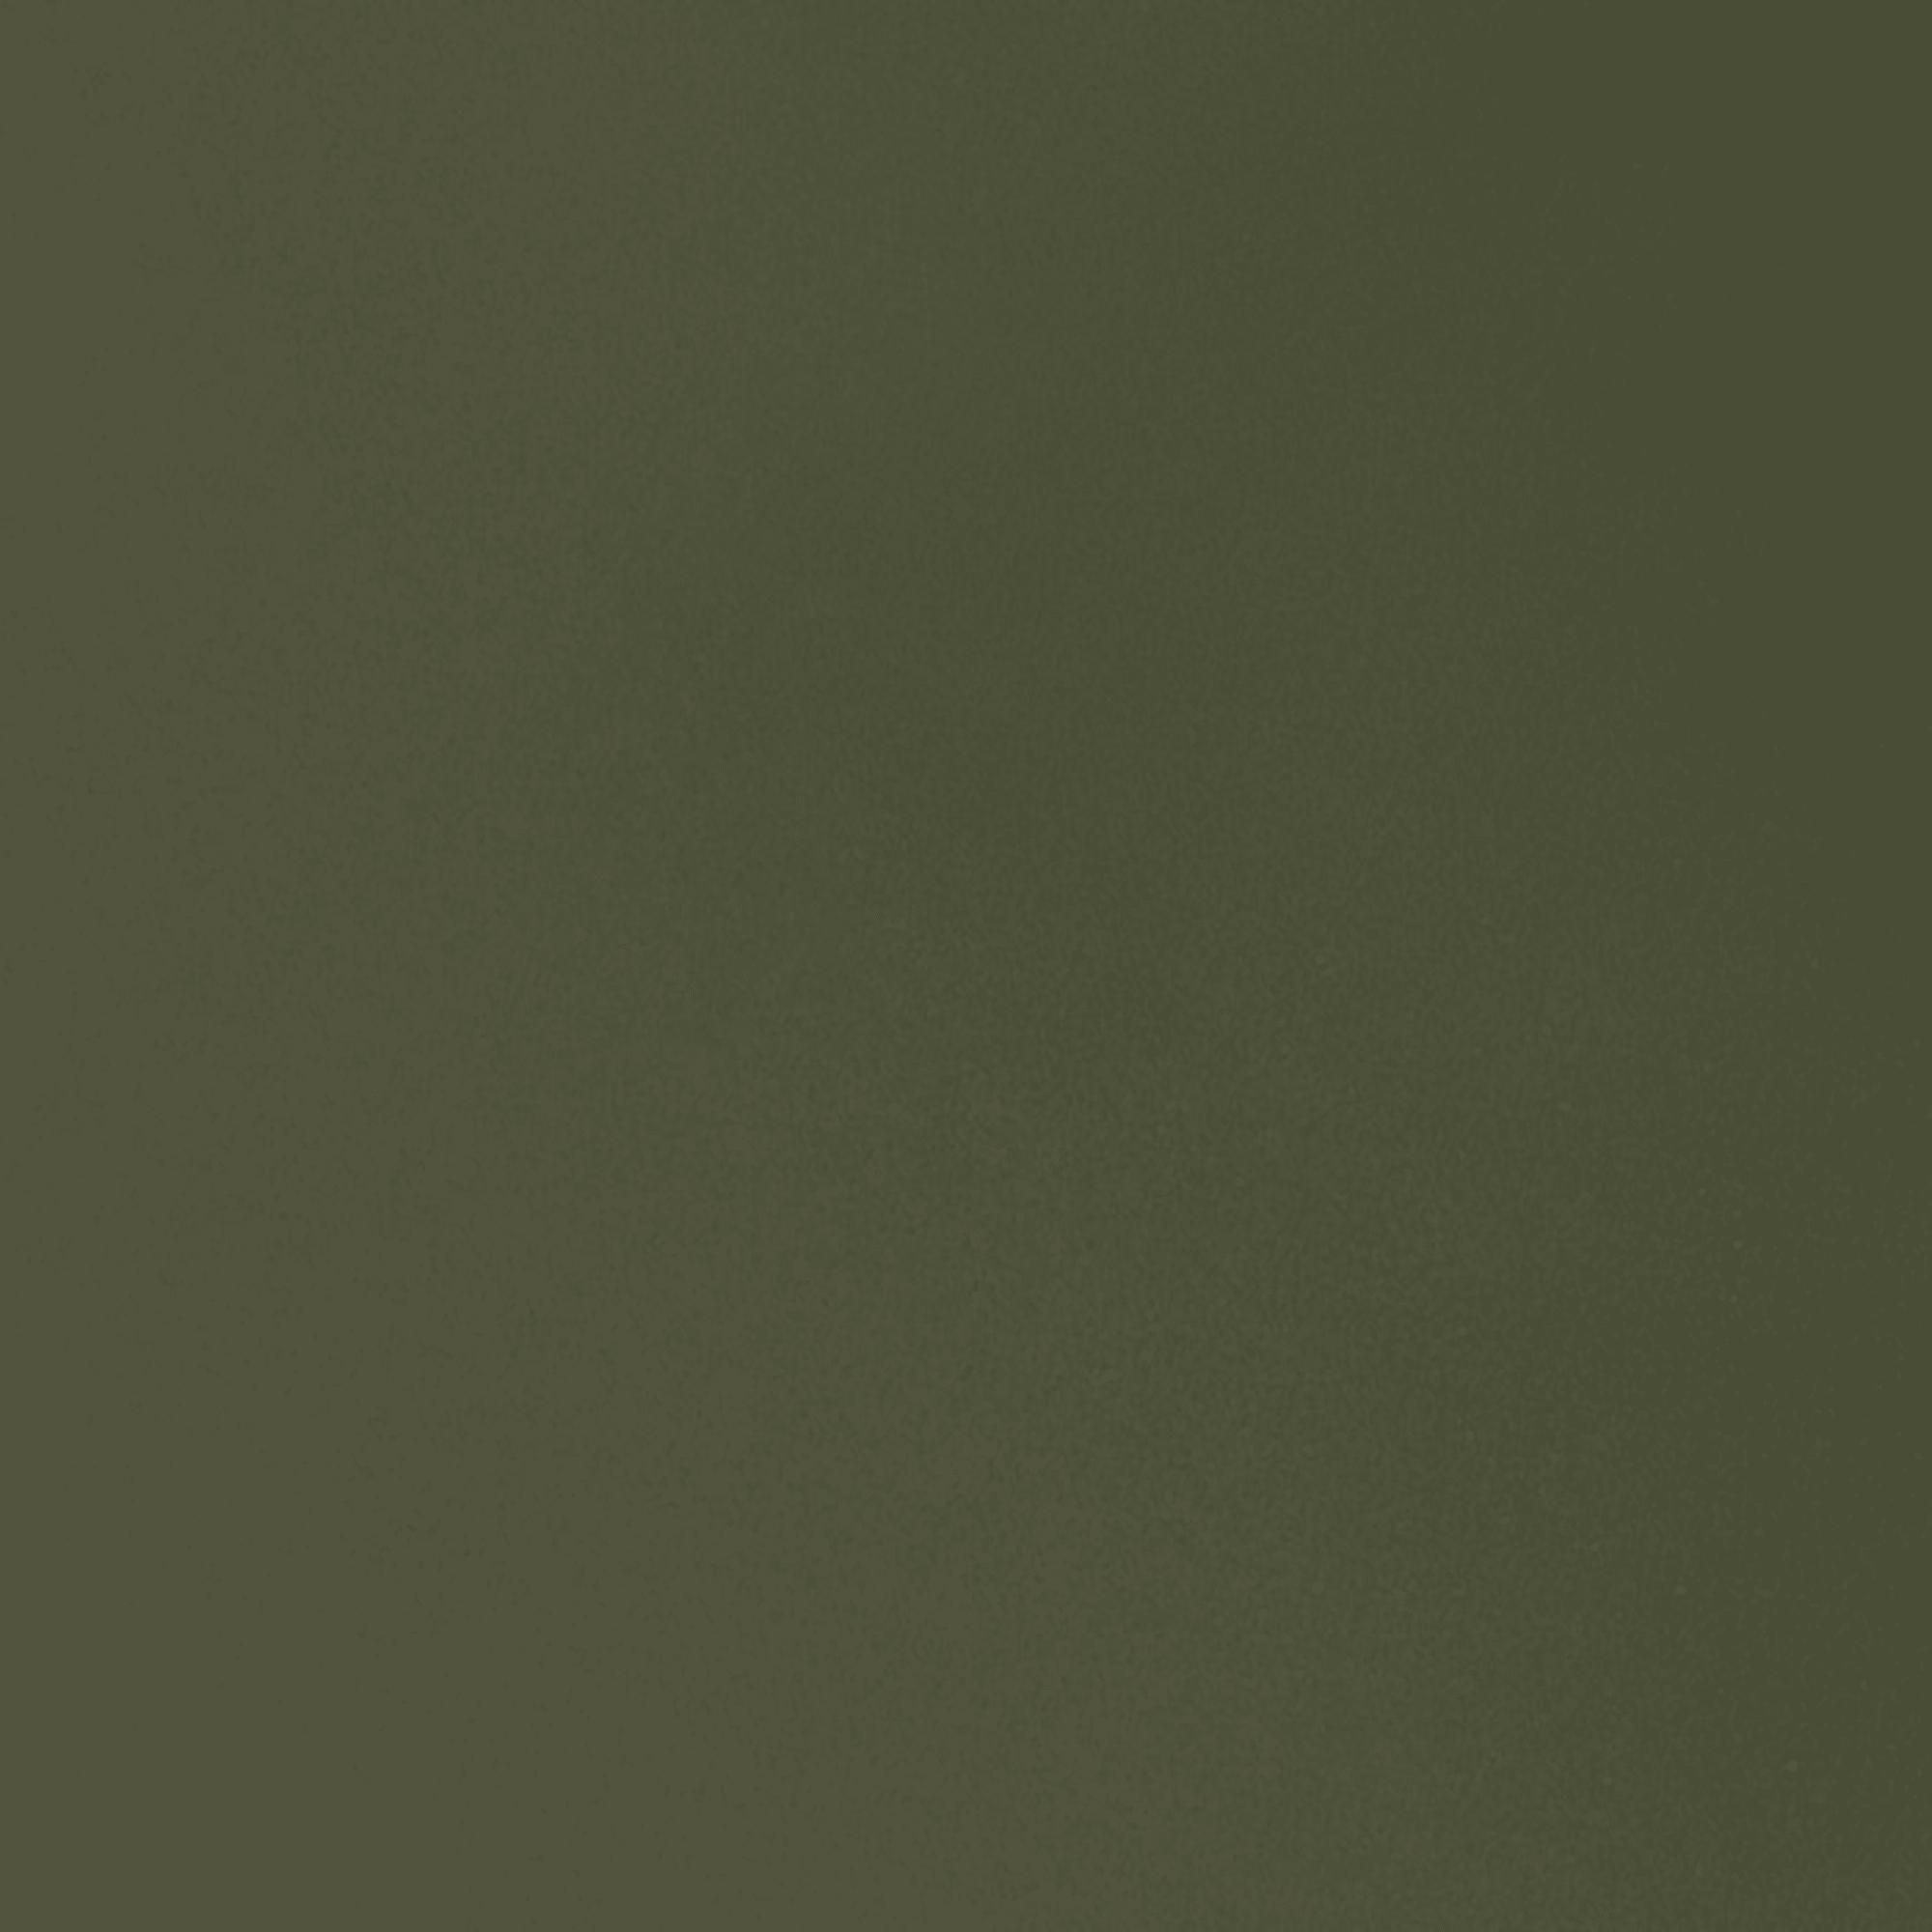 FDB Møbler C35 B Eettafel Oak, Olive Linoleum, 95x220cm